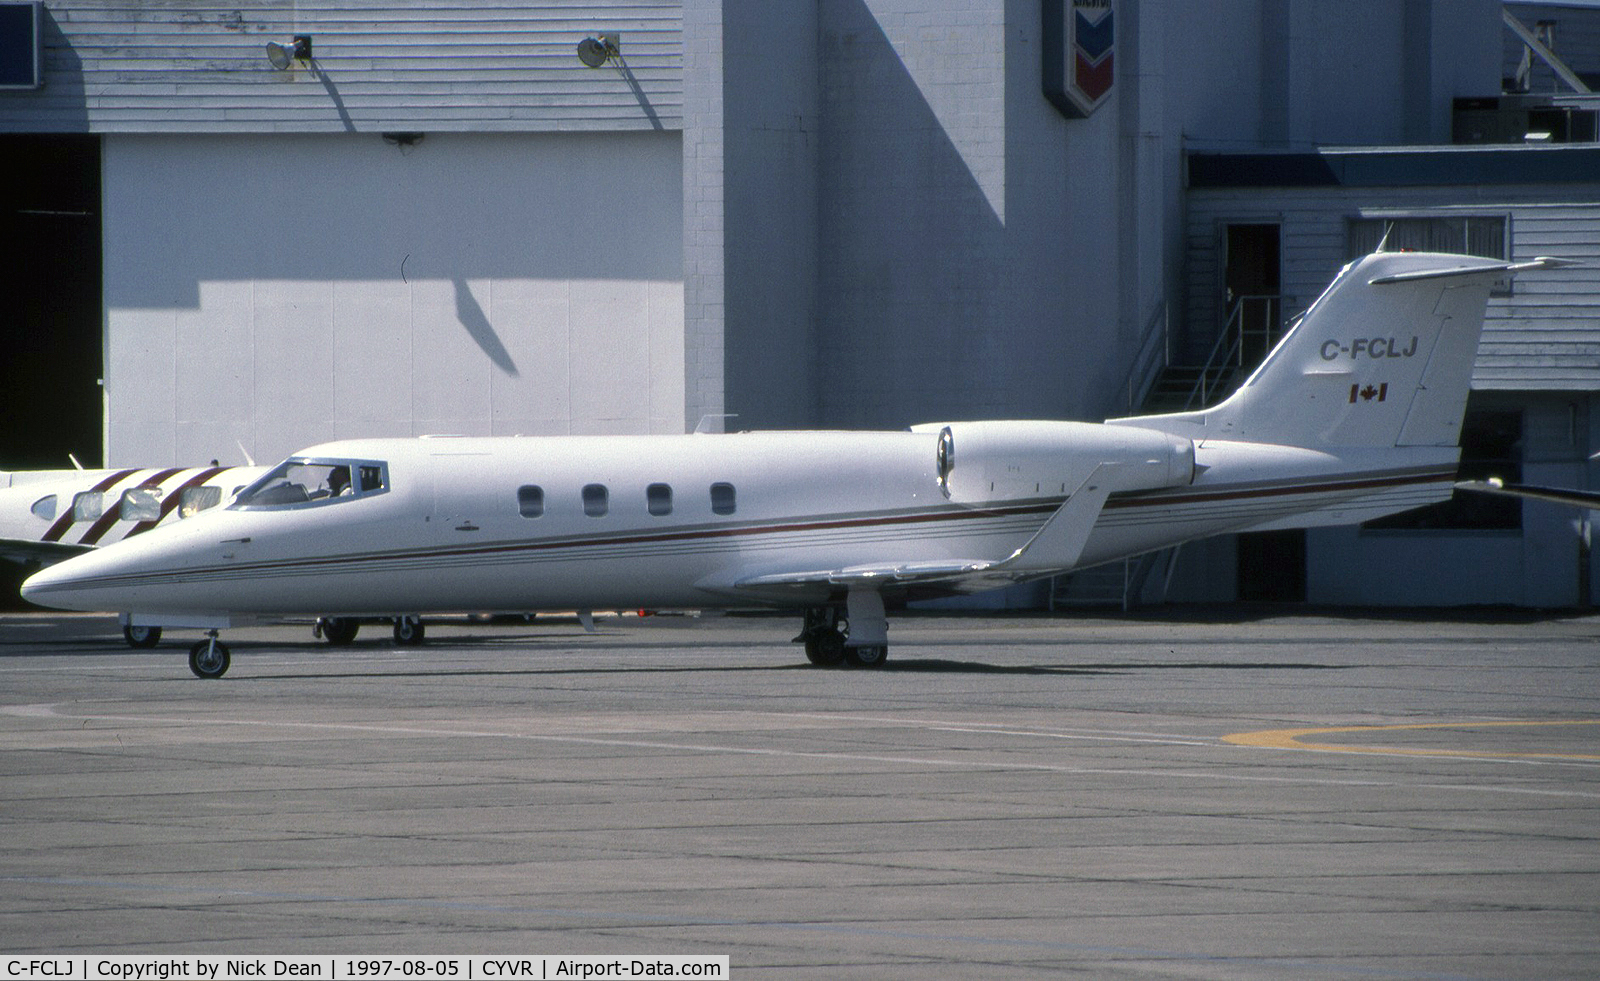 C-FCLJ, 1985 Learjet 55 C/N 55-118, CYVR